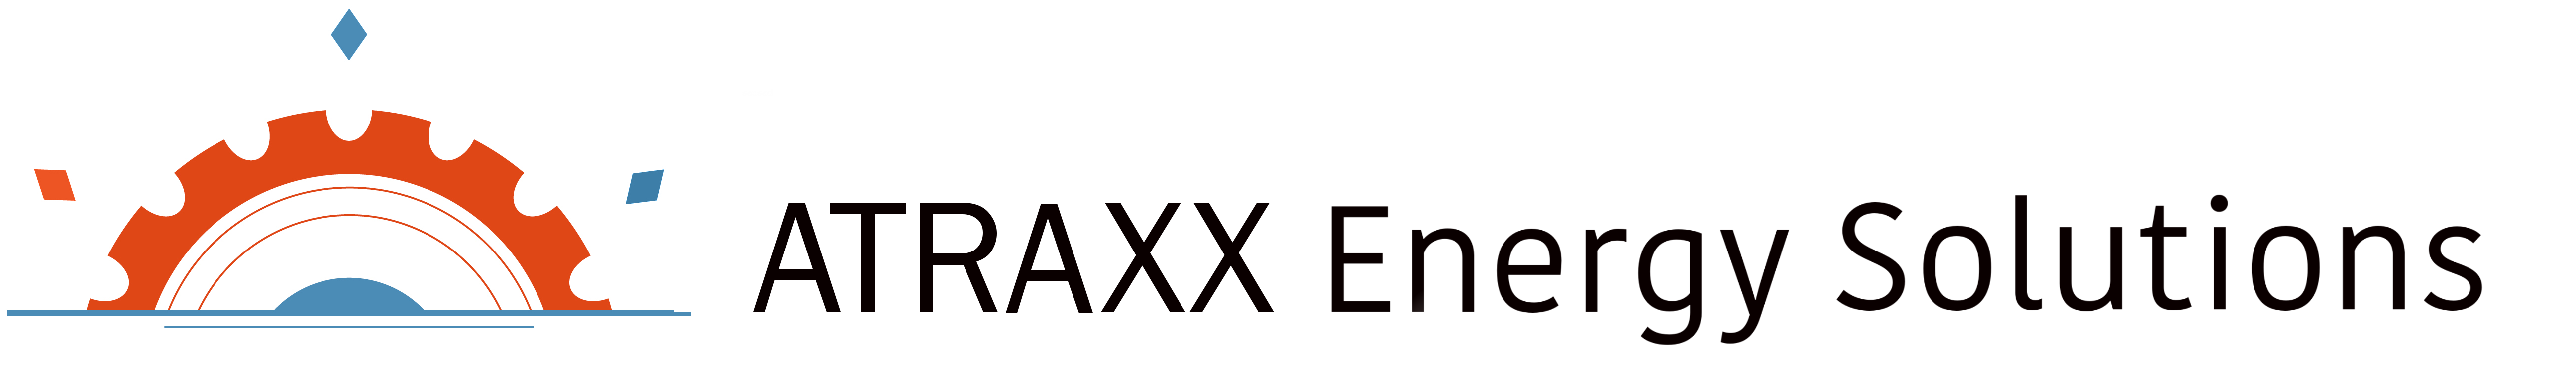 atraxx_energy_solutions+text_ed_5